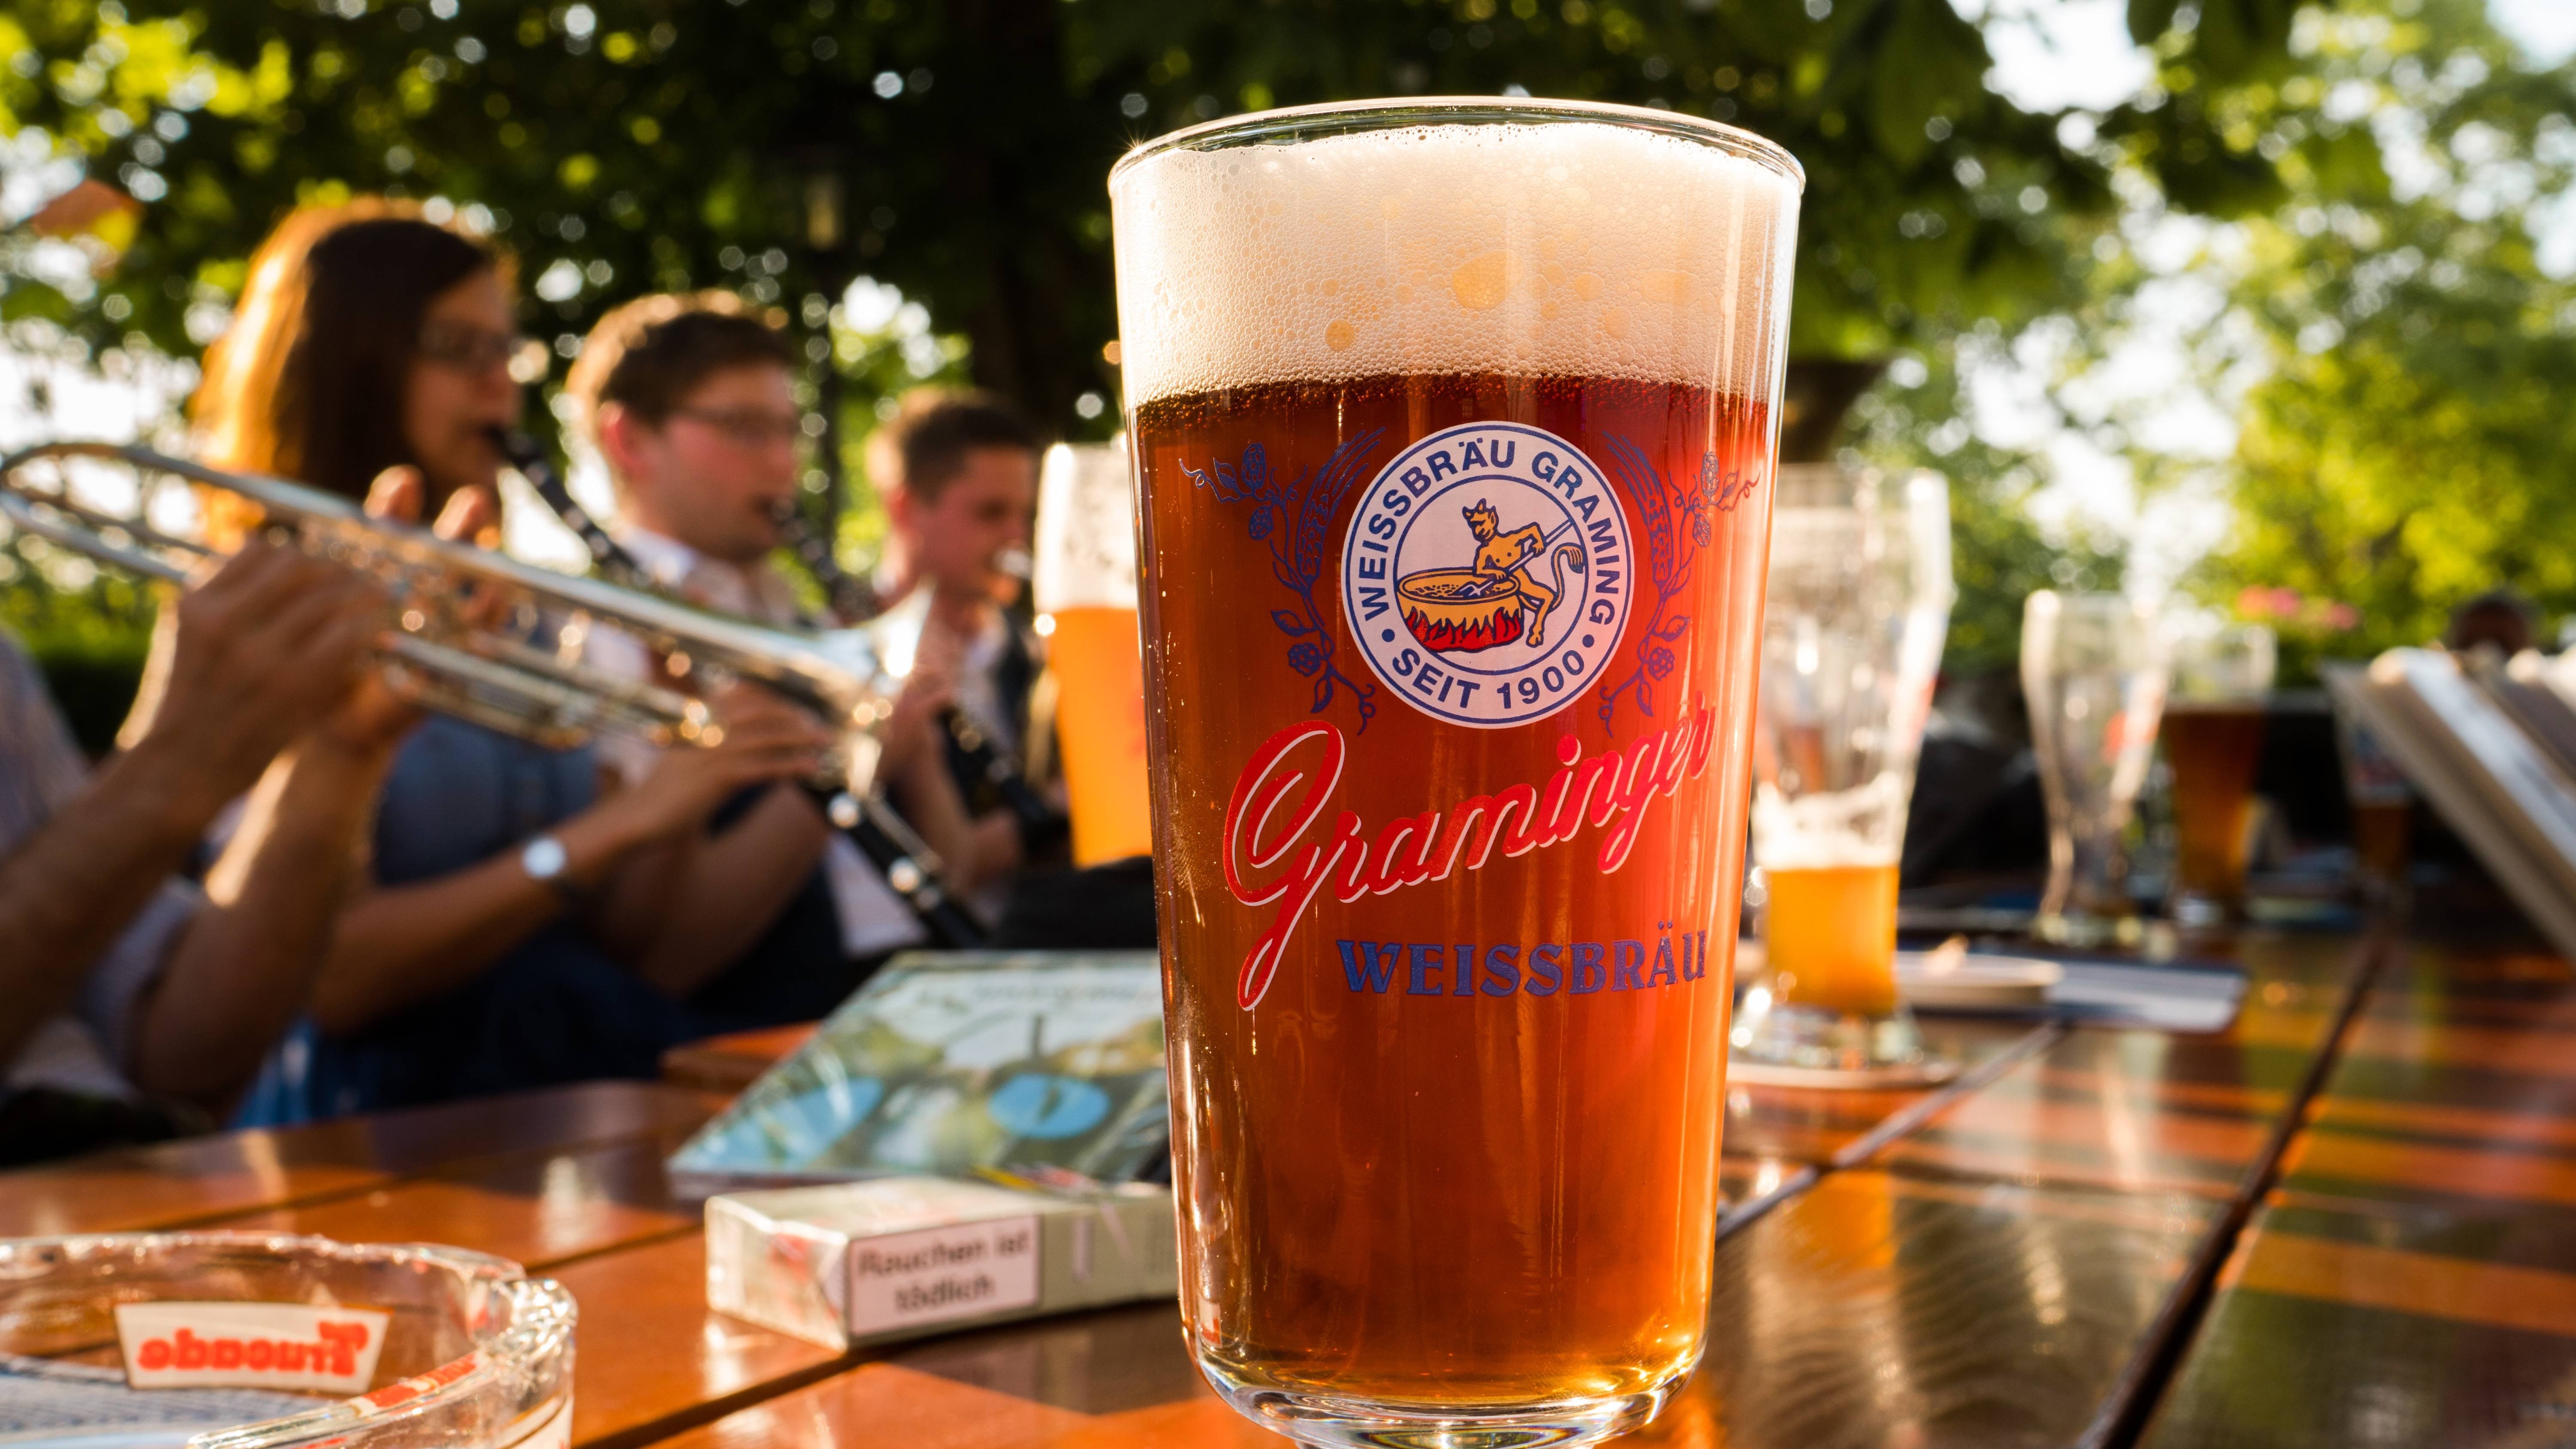 Graminger Weißbräu Brauerei aus Deutschland